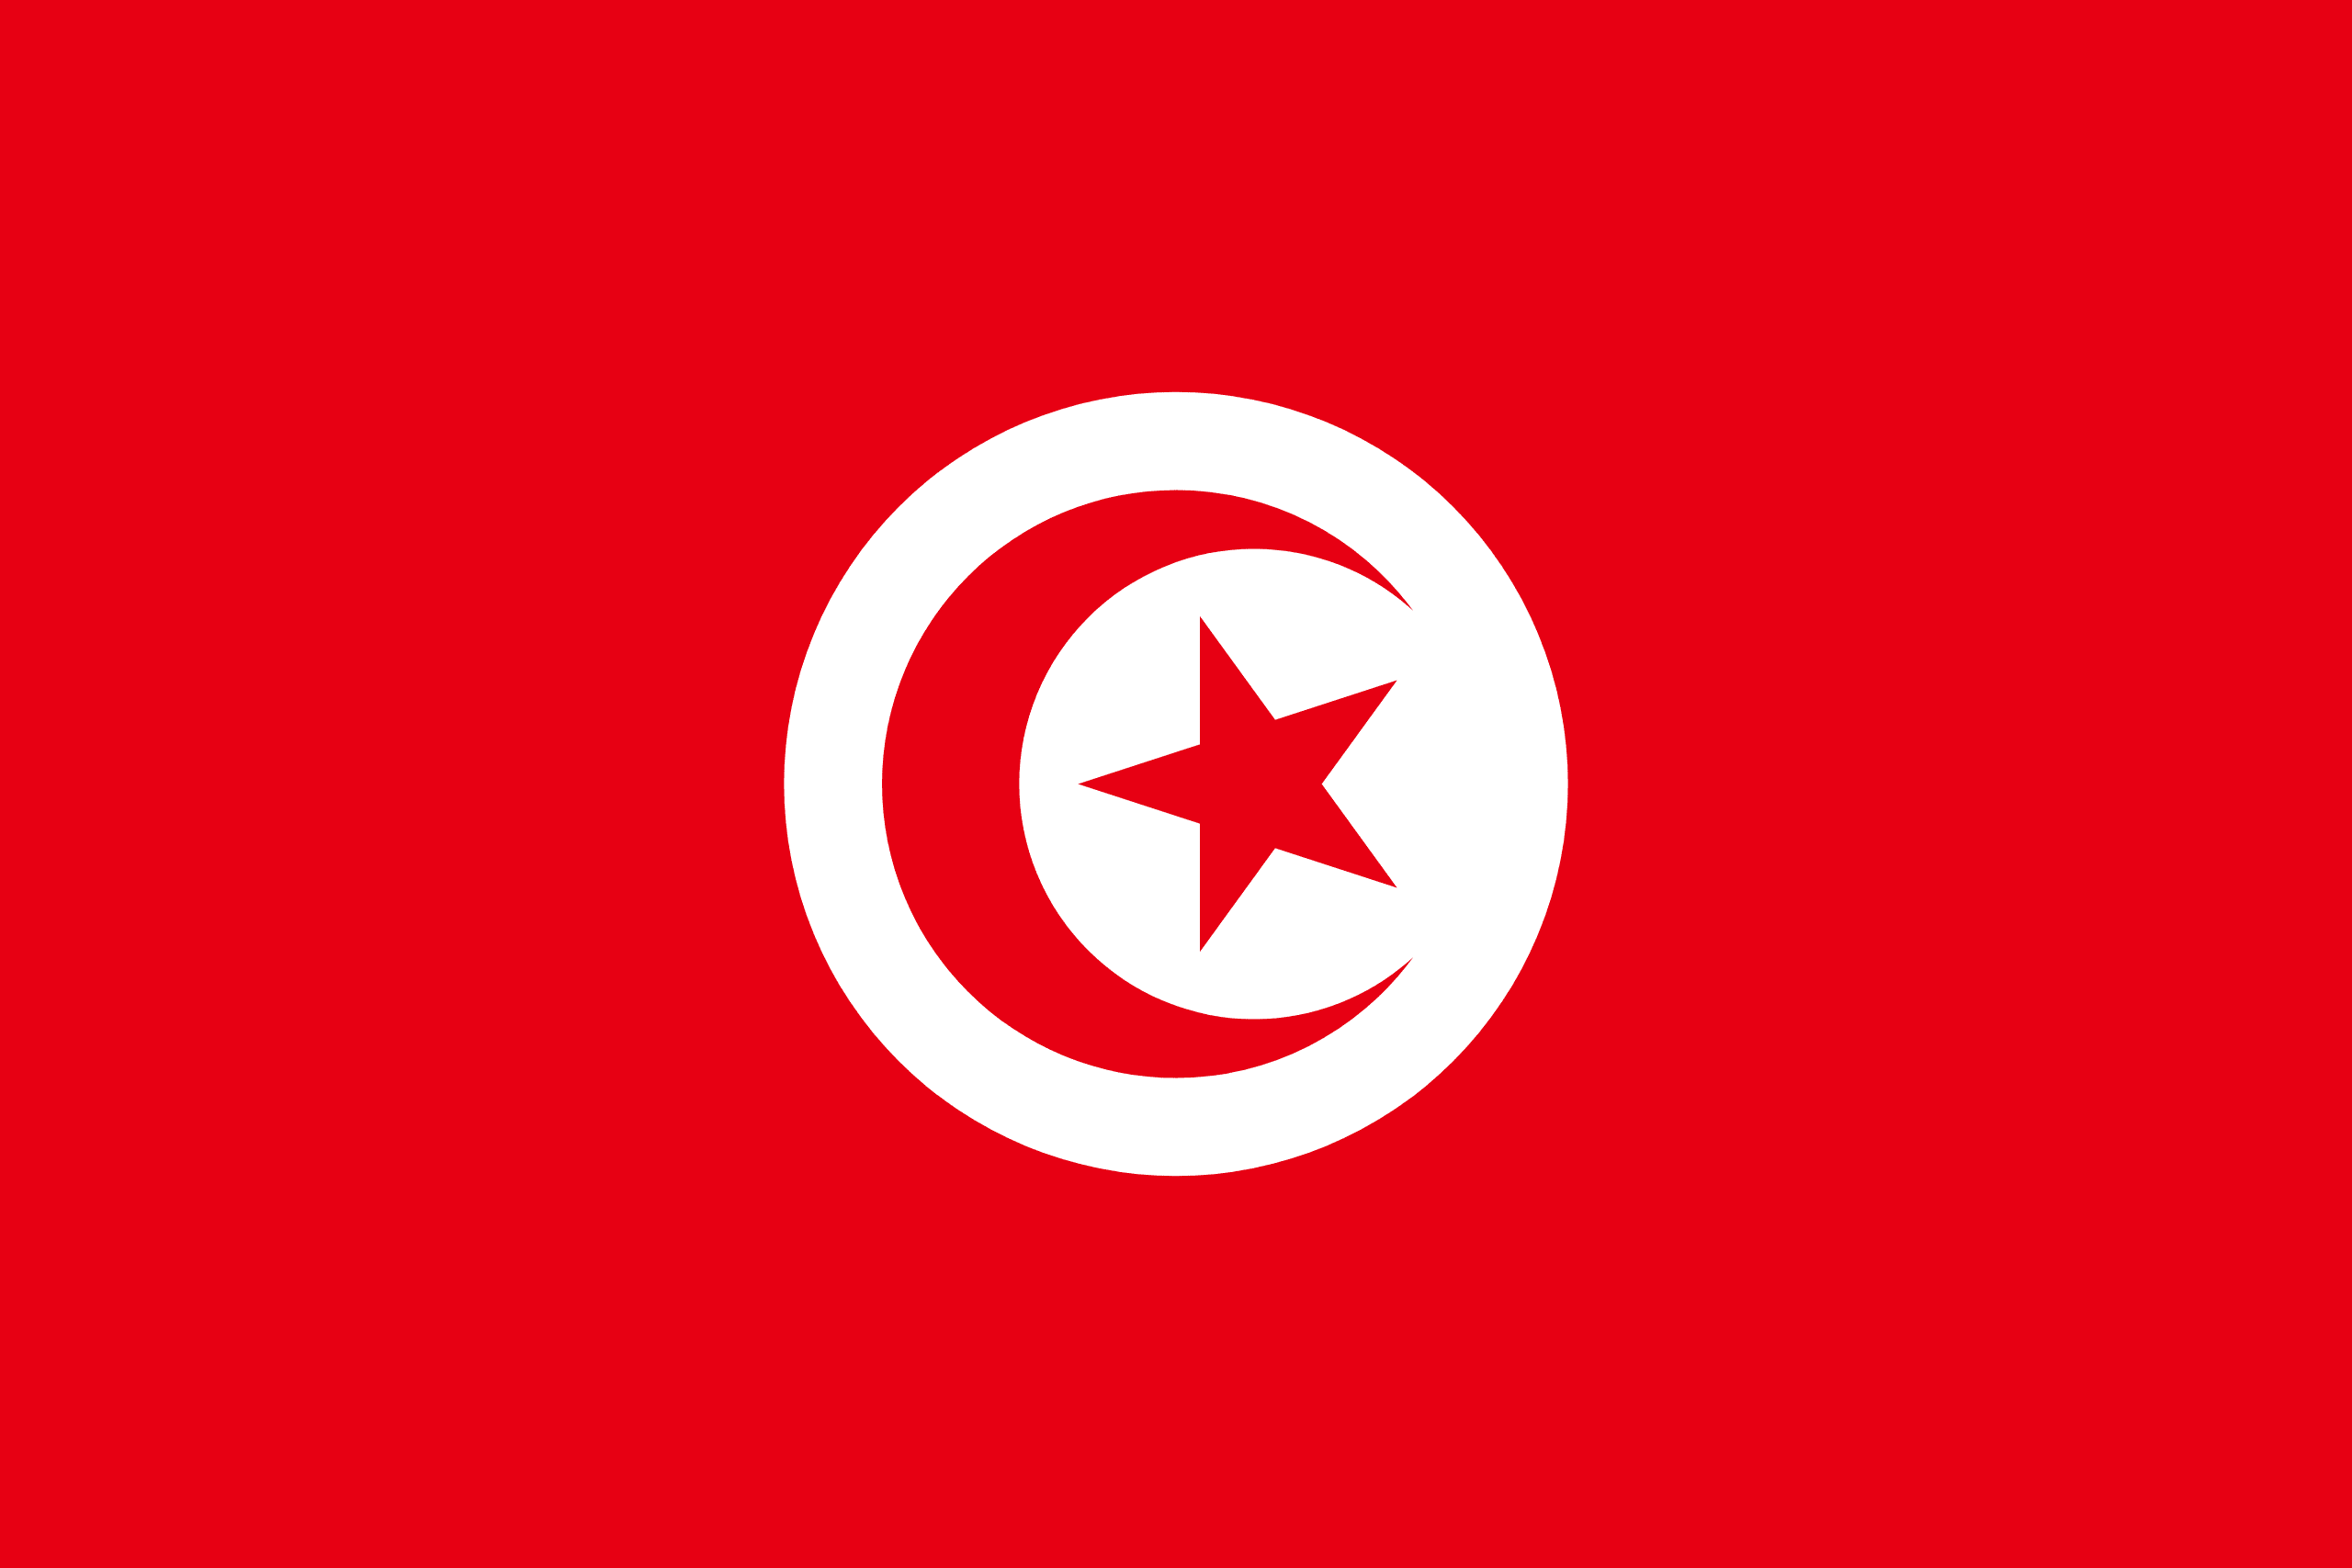 チュニジア共和国 flag